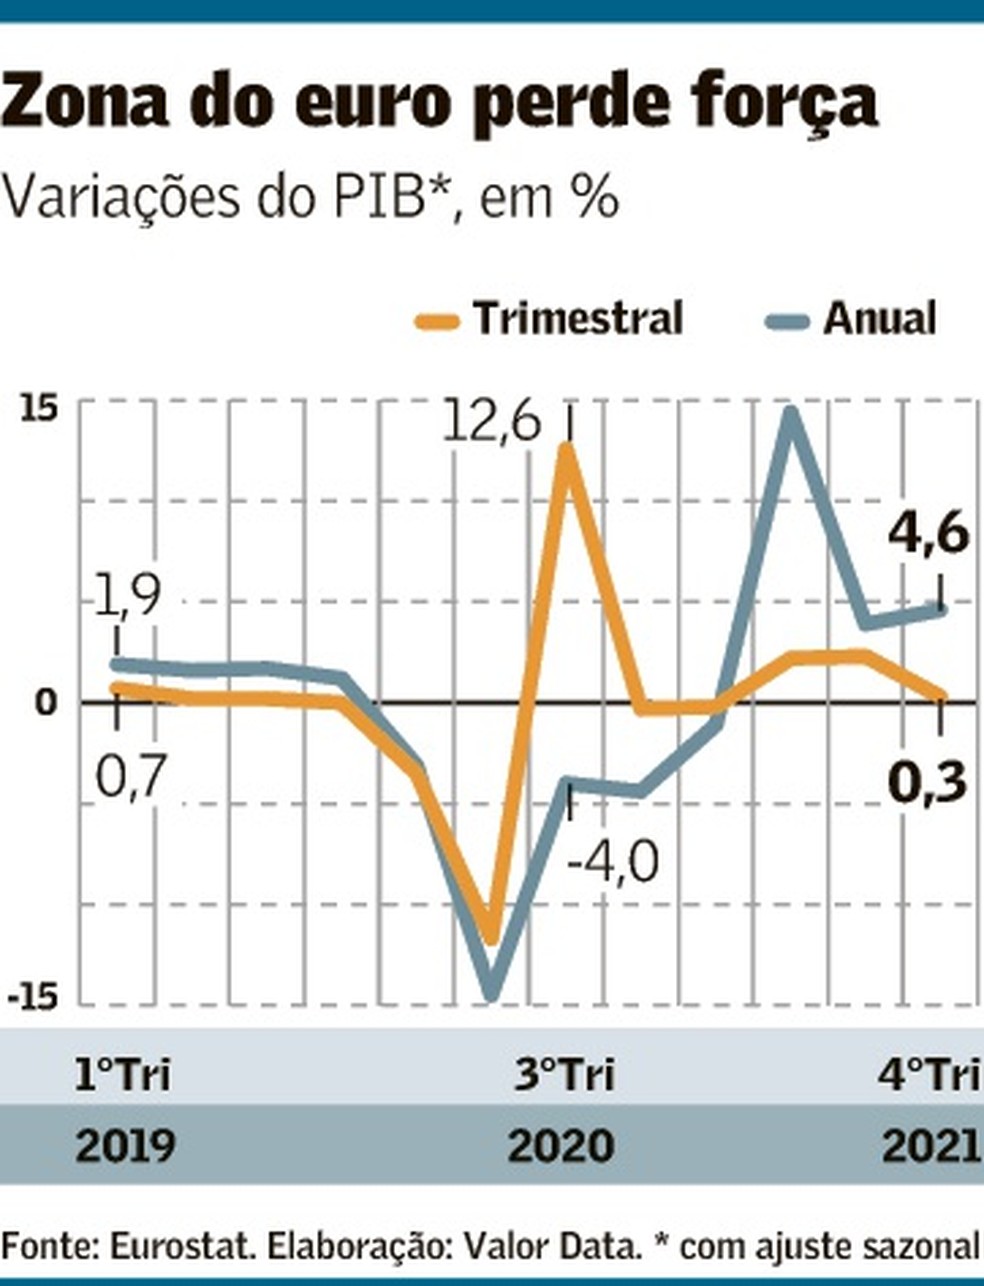 Crescimento do PIB do Brasil supera Zona do Euro e EUA, mas fica abaixo da  China no 1º trimestre